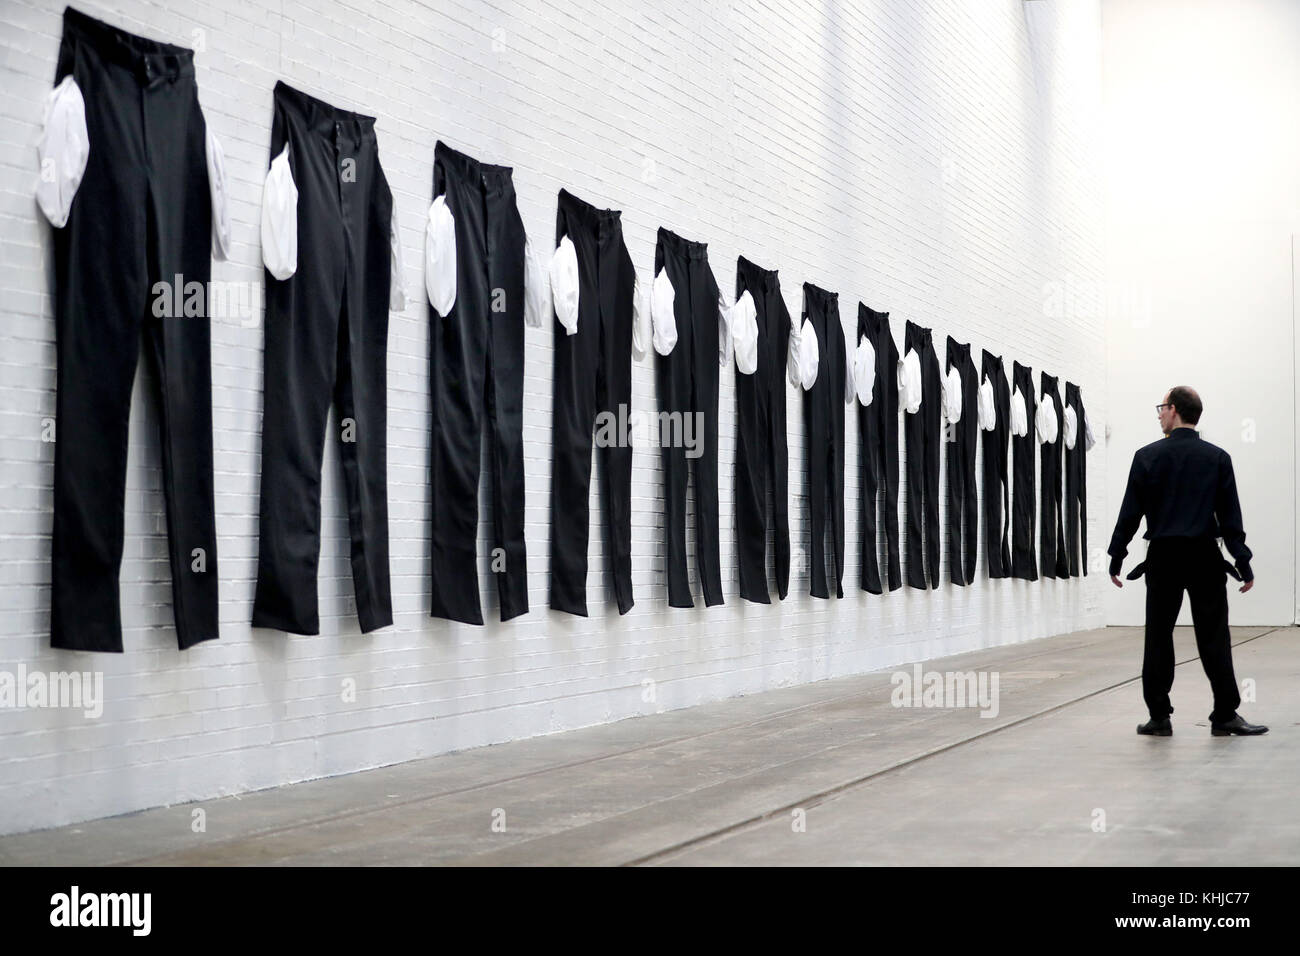 Eine Serie von XXXXXXL-Hosen mit ausgespannten Taschen im Tramway Arts Center in Glasgow, die Teil einer Ausstellung der in Los Angeles lebenden Künstlerin Amanda Ross-Ho ist und Teil einer Installation ist, die einen Fabrikboden darstellen soll. Stockfoto